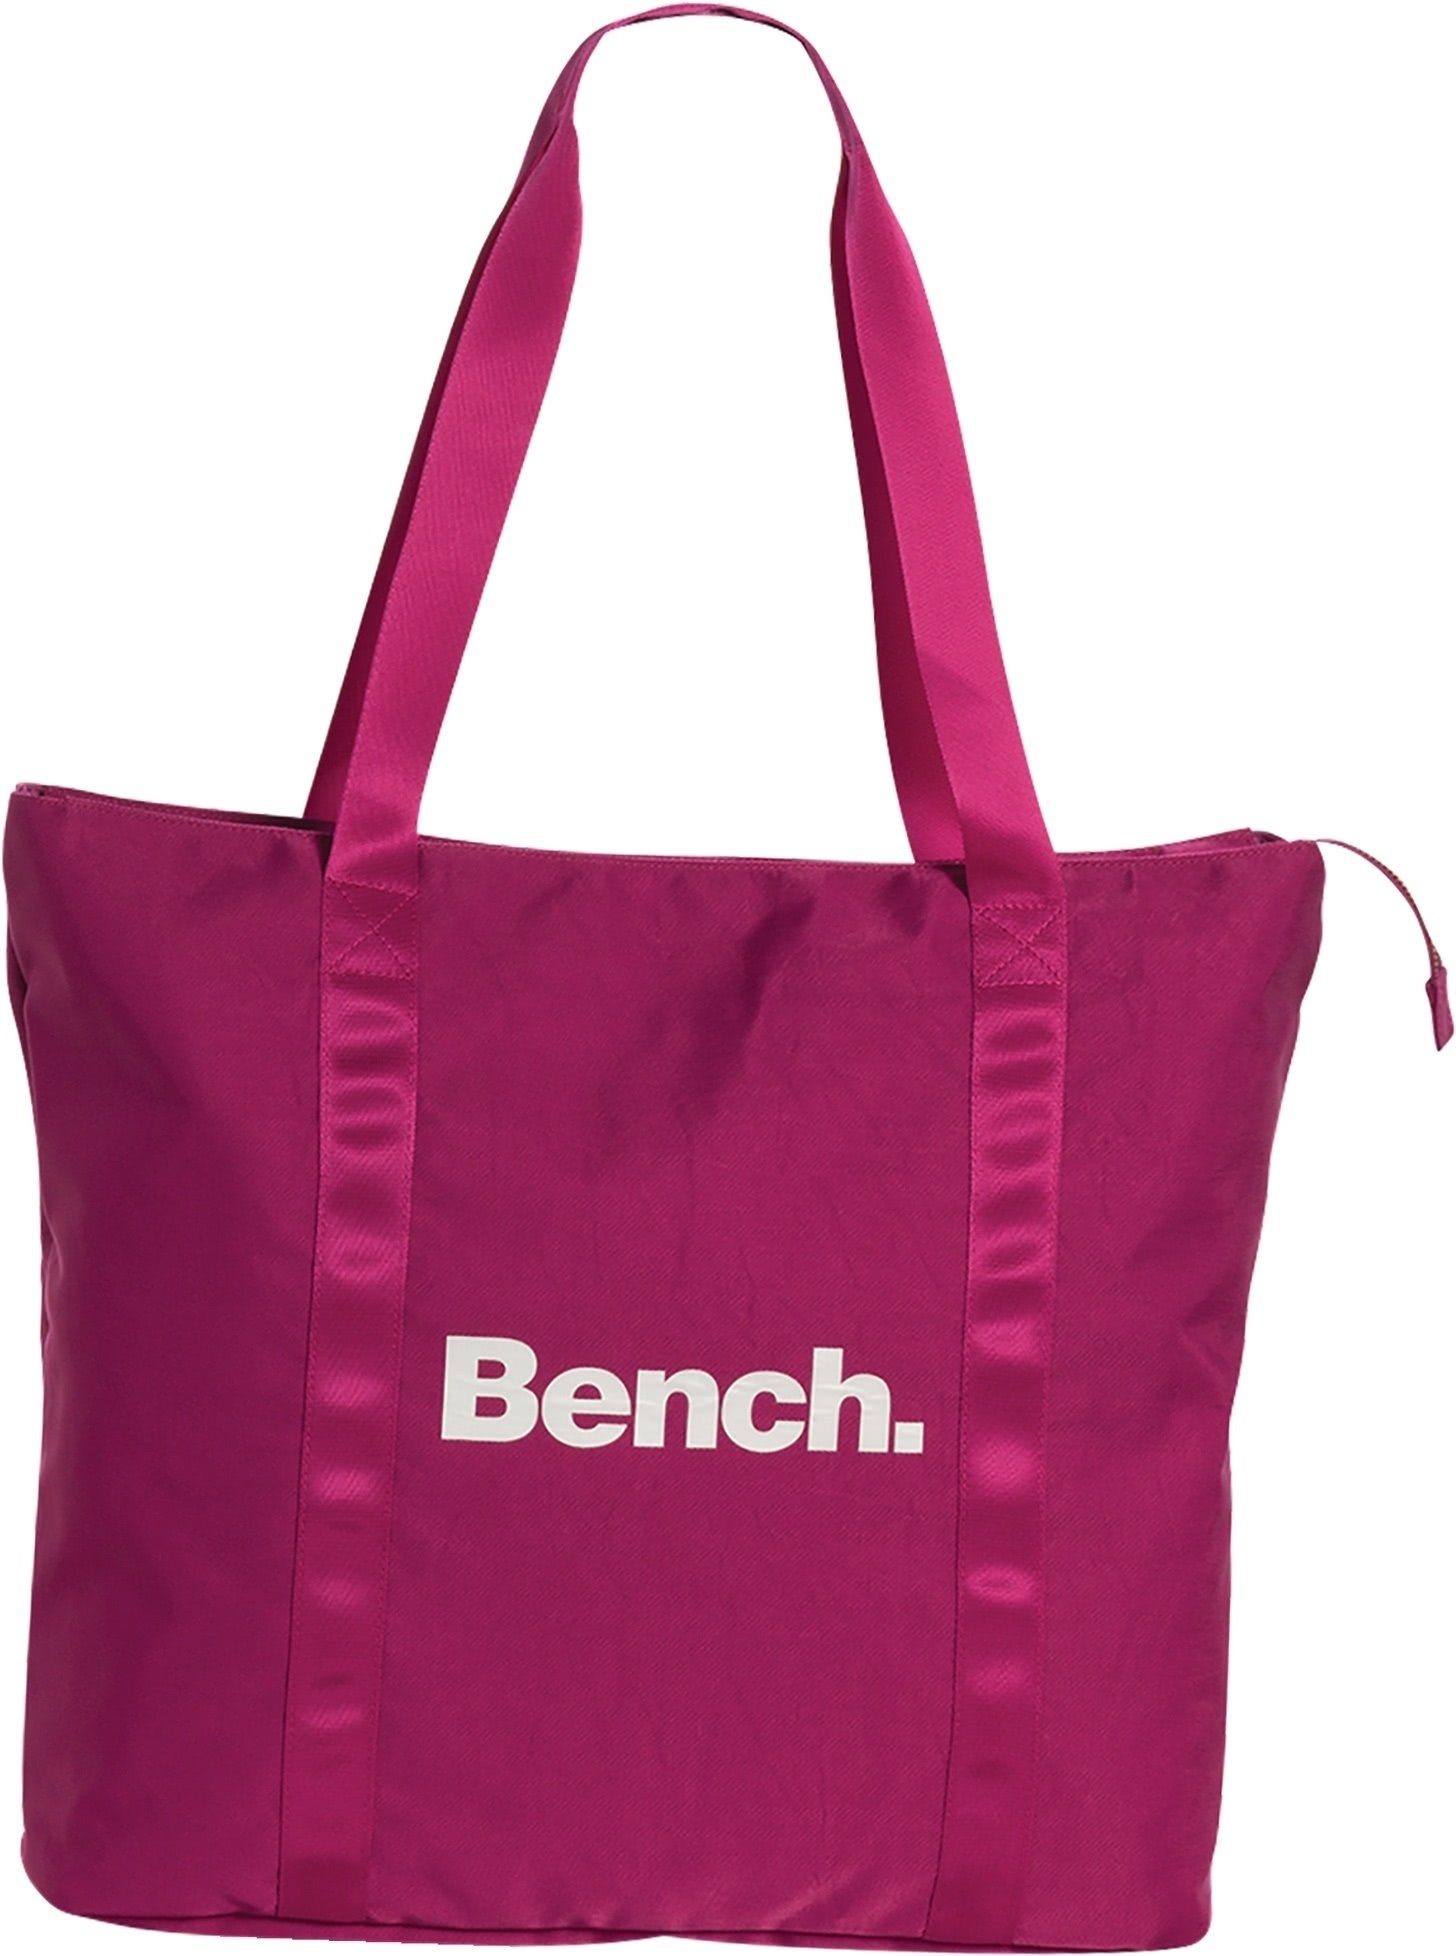 Bench. Schultertasche Bench Shopper Nylon Schultertasche pink, Damen,  Jugend Tasche strapazierfähiges Textilnylon pink, Uni